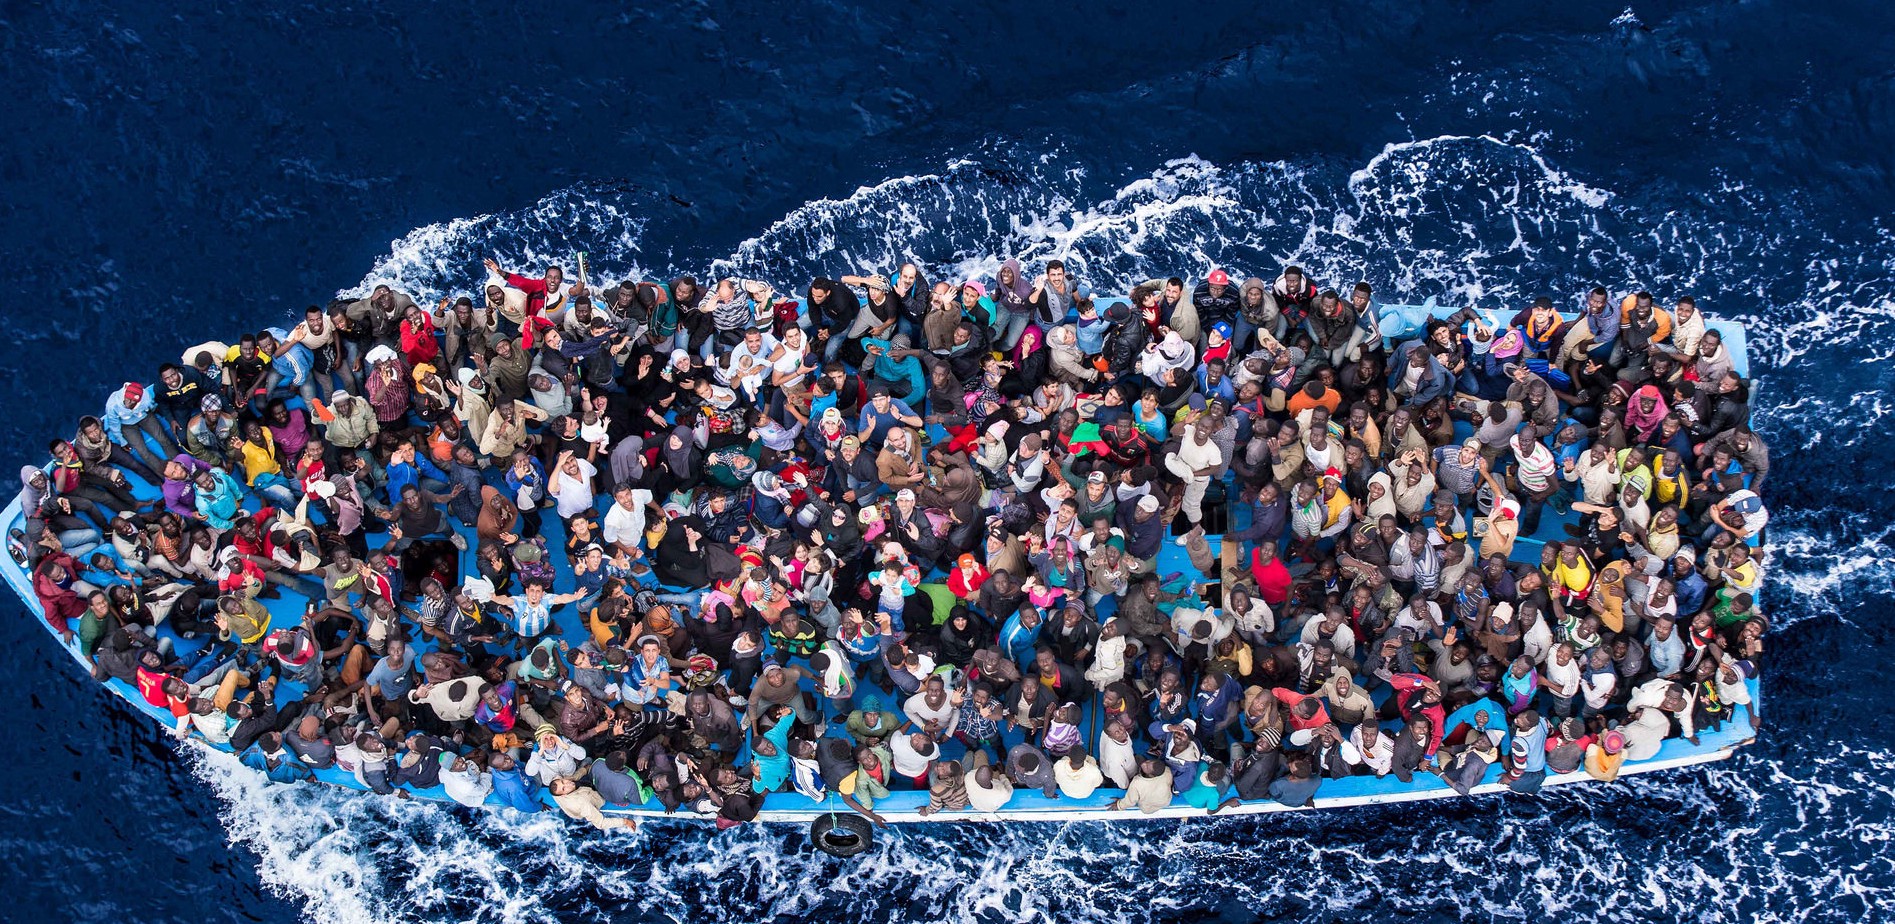 Migration & Refugee managements